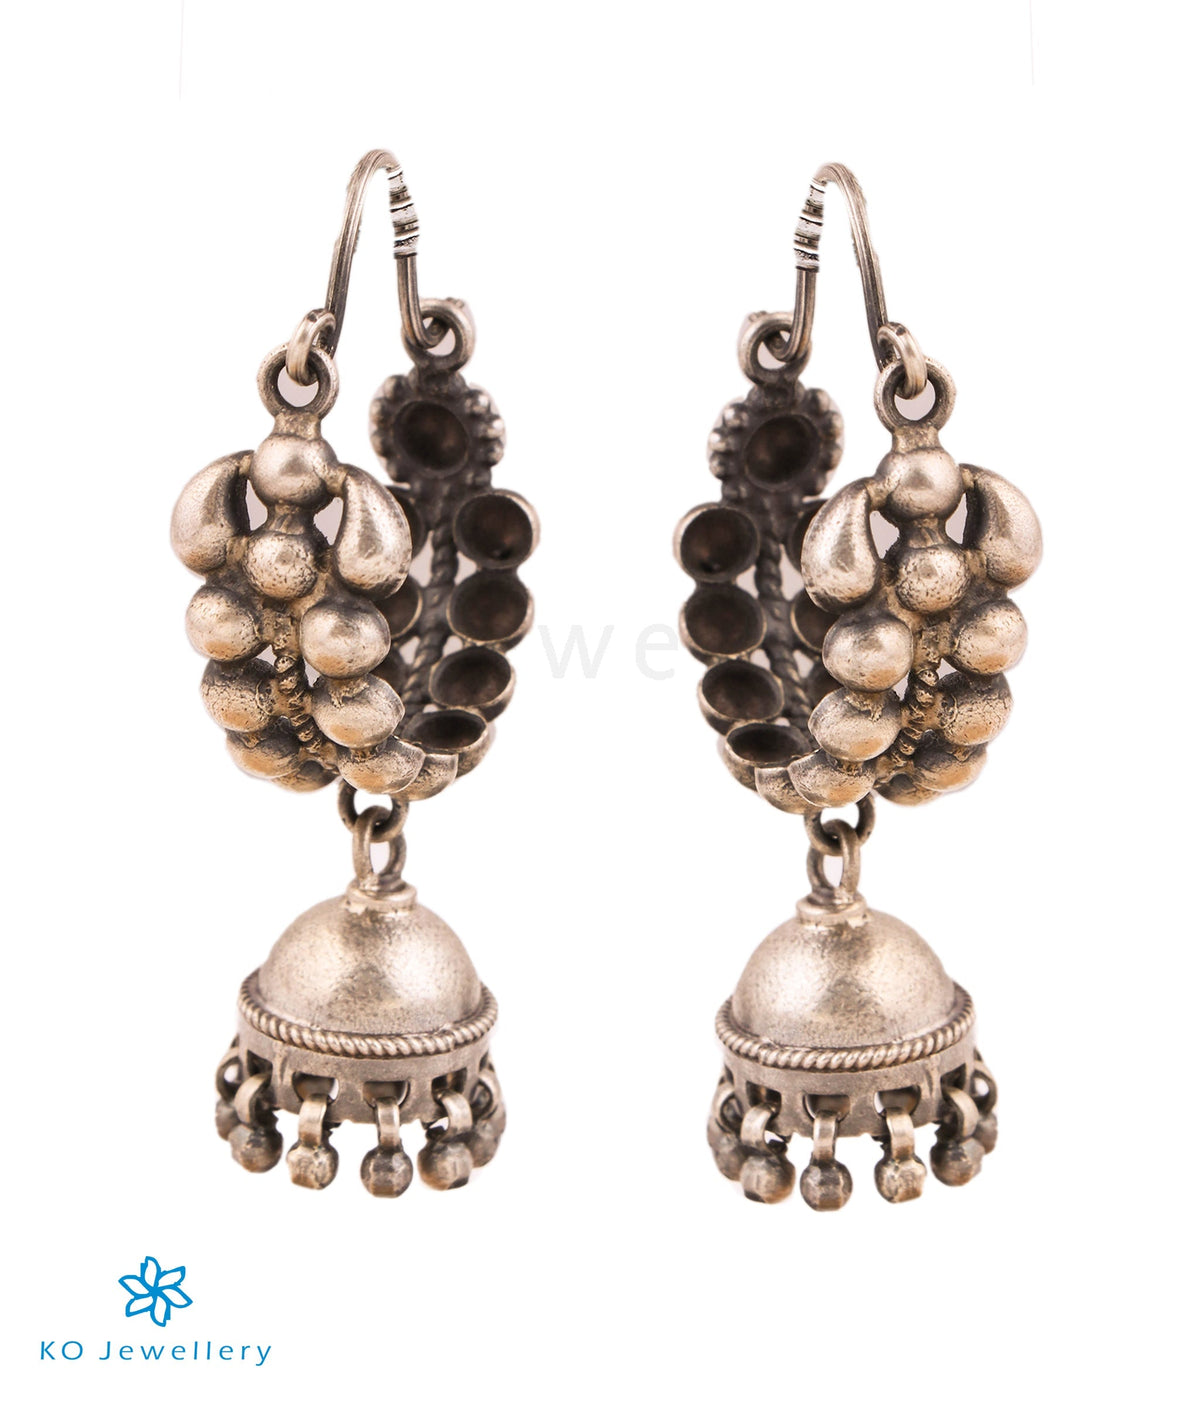 Buy Online Oxidised Mirror Earrings, Indian Ethnic Long Earirngs, Indian  Silver Earrings, Oxidized Earr - Zifiti.com 1078885